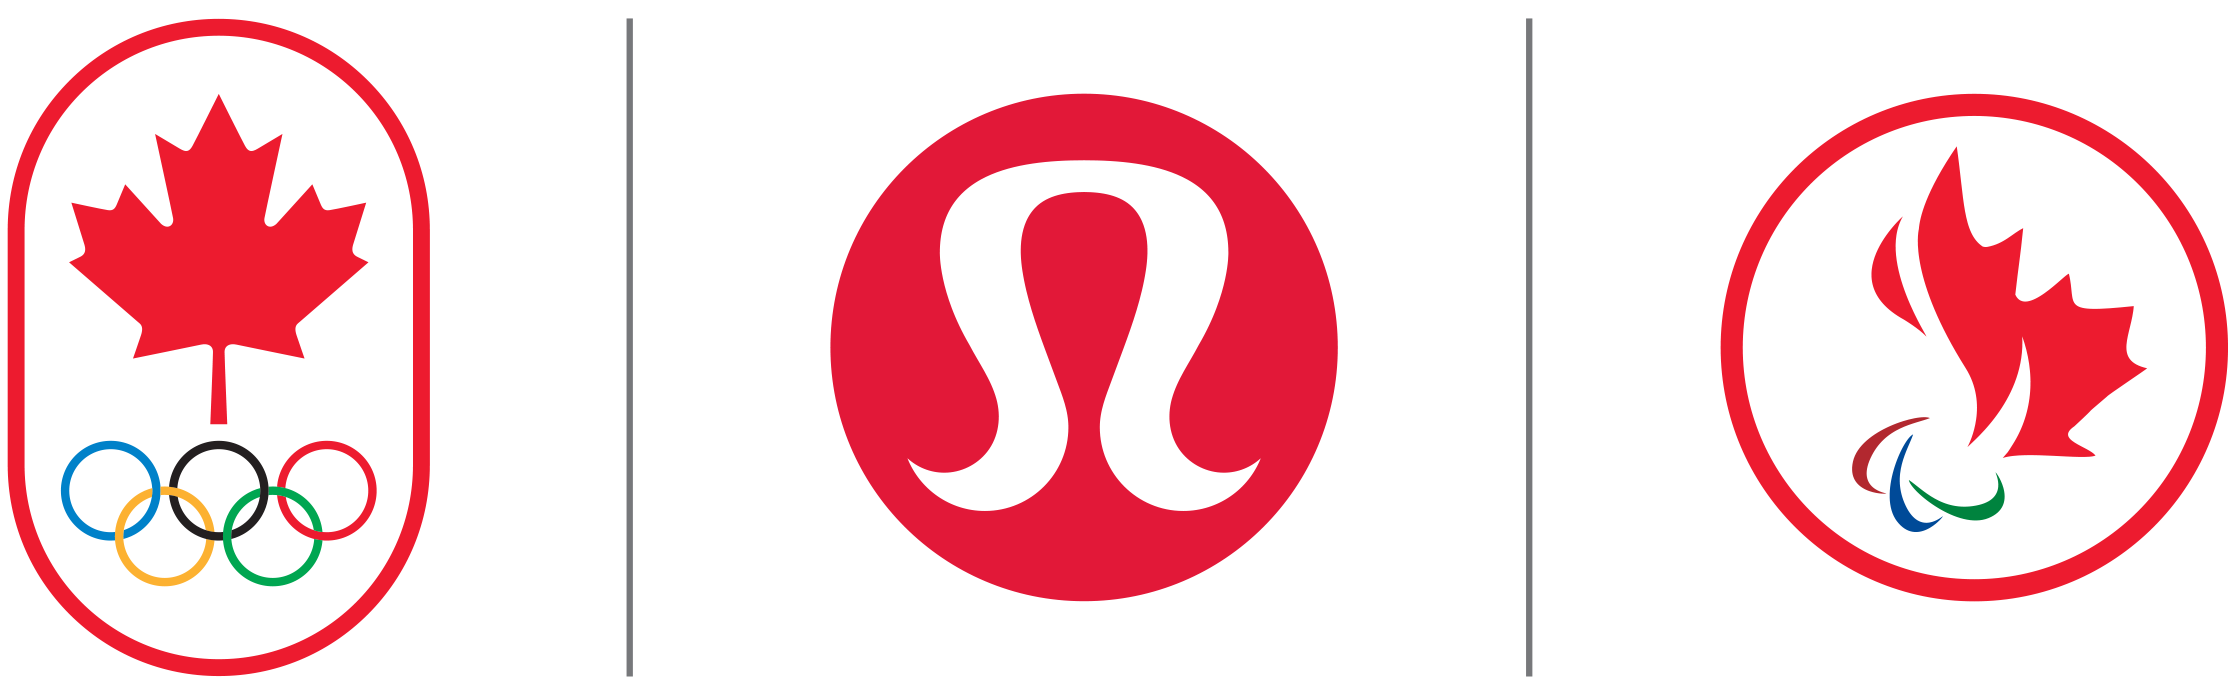 lululemon athletica logo